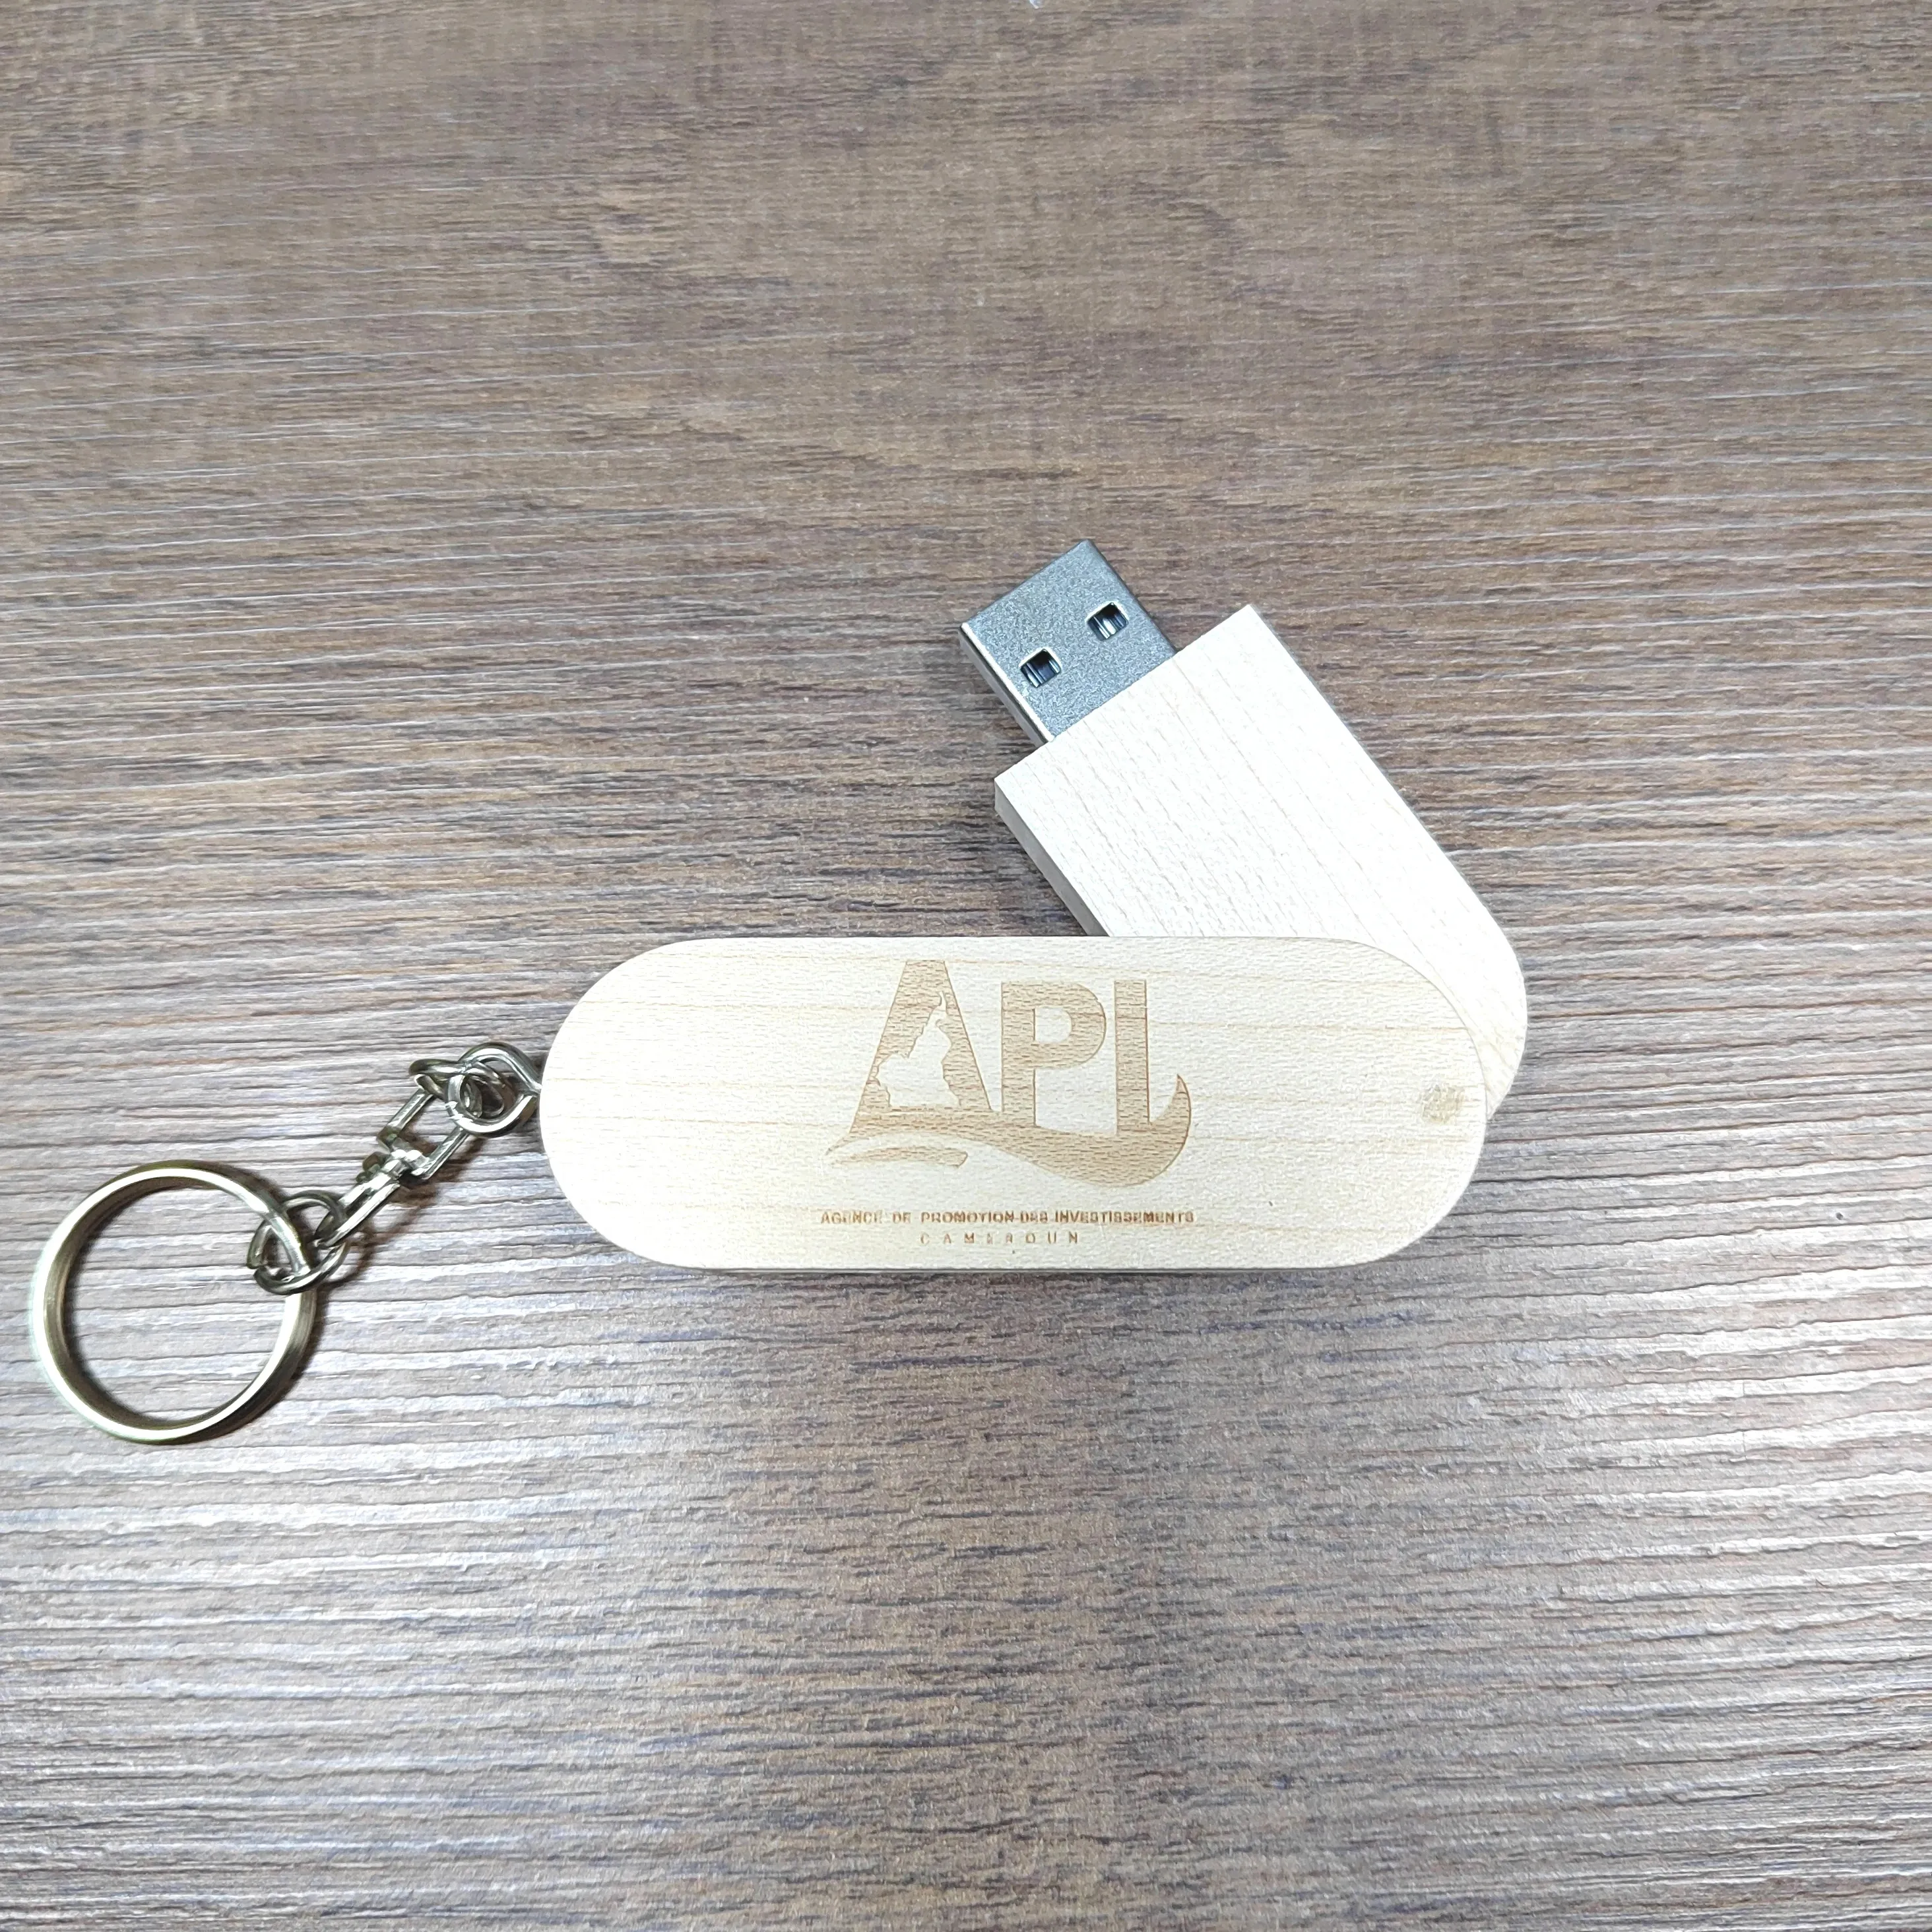 USB 3.0 tongkat kayu ukiran Logo kustom, Flash Drive Usb 4GB 8GB 16GB 2.0 kotak kayu Pen Drive 32GB 64GB 128GB